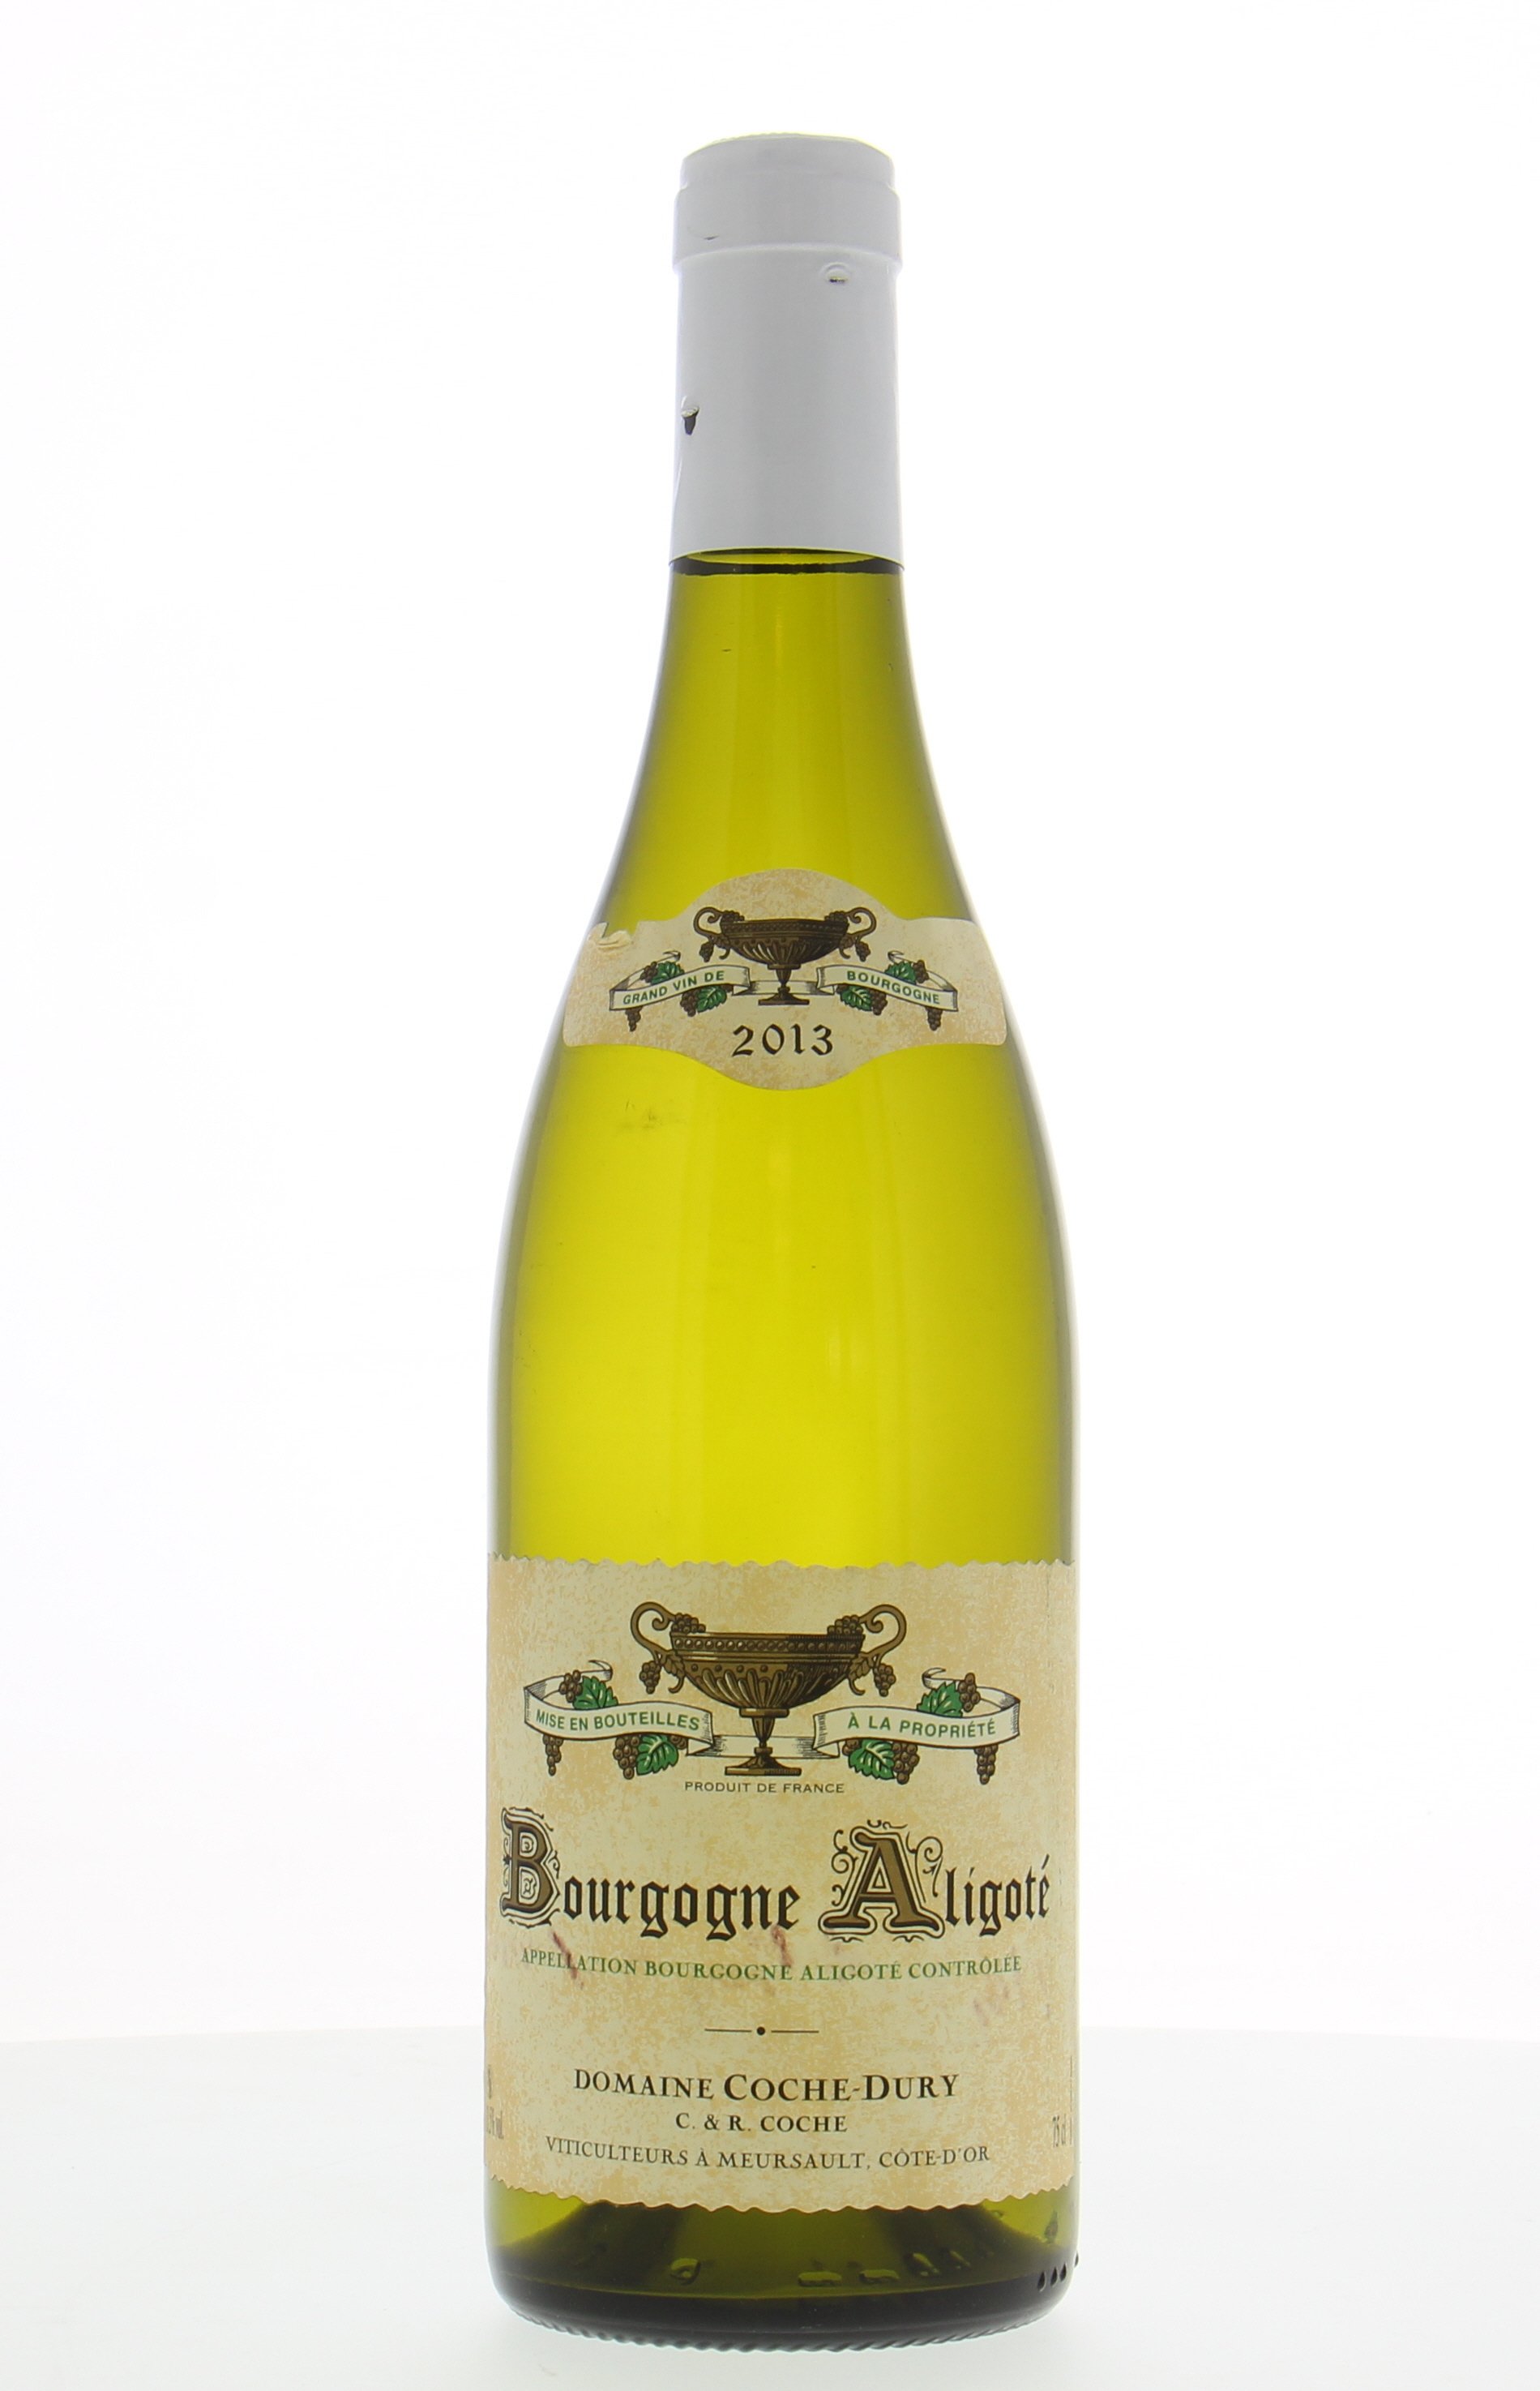 Coche Dury - Bourgogne Aligote 2013 Perfect